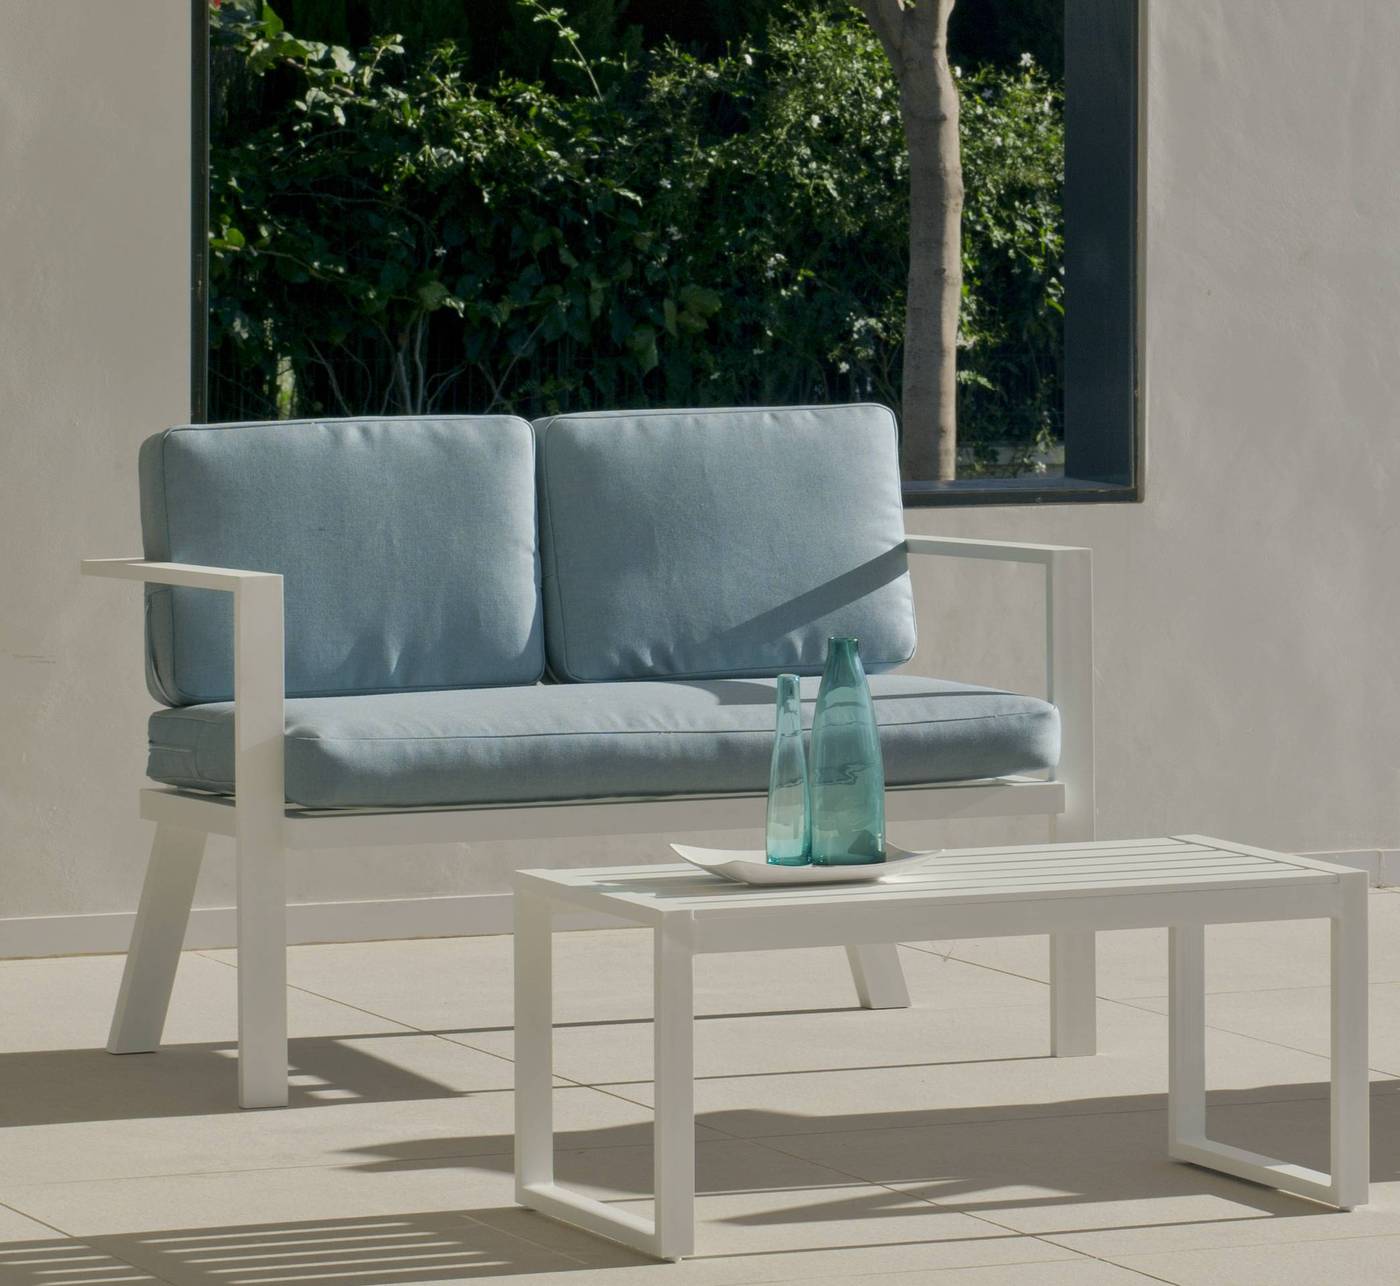 Conjunto Aluminio Luxe Azores-7 - Conjunto de aluminio luxe: 1 sofá de 2 plazas + 2 sillones + 1 mesa de centro + cojines. Disponible en color blanco y antracita.